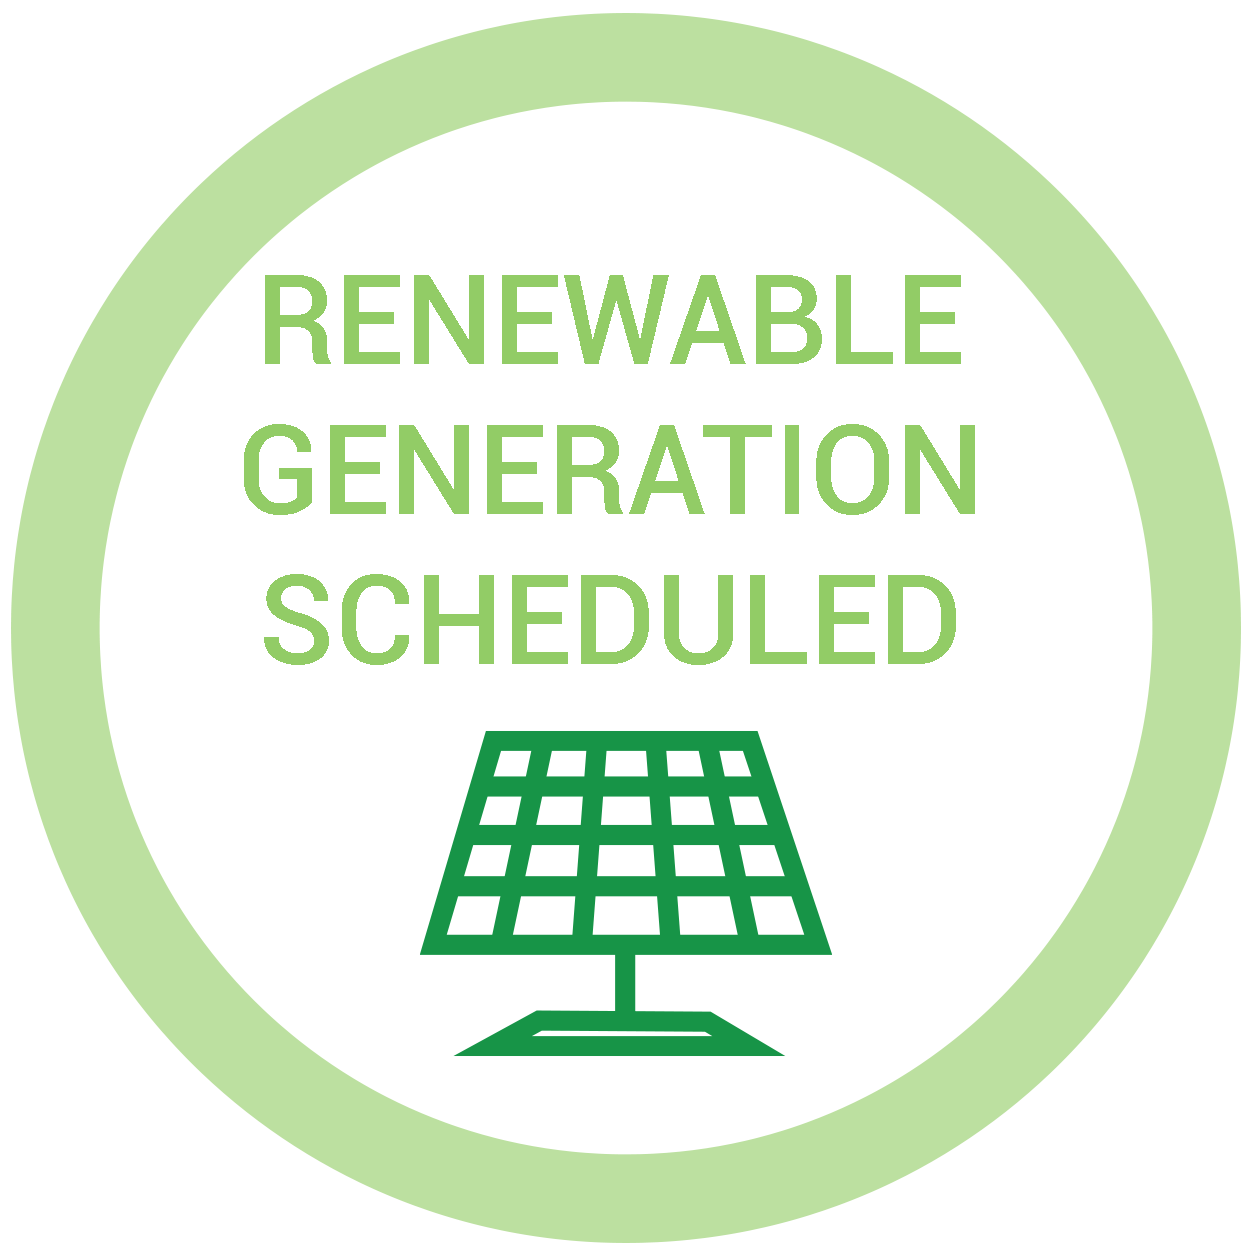 Renewable Generation Scheduled